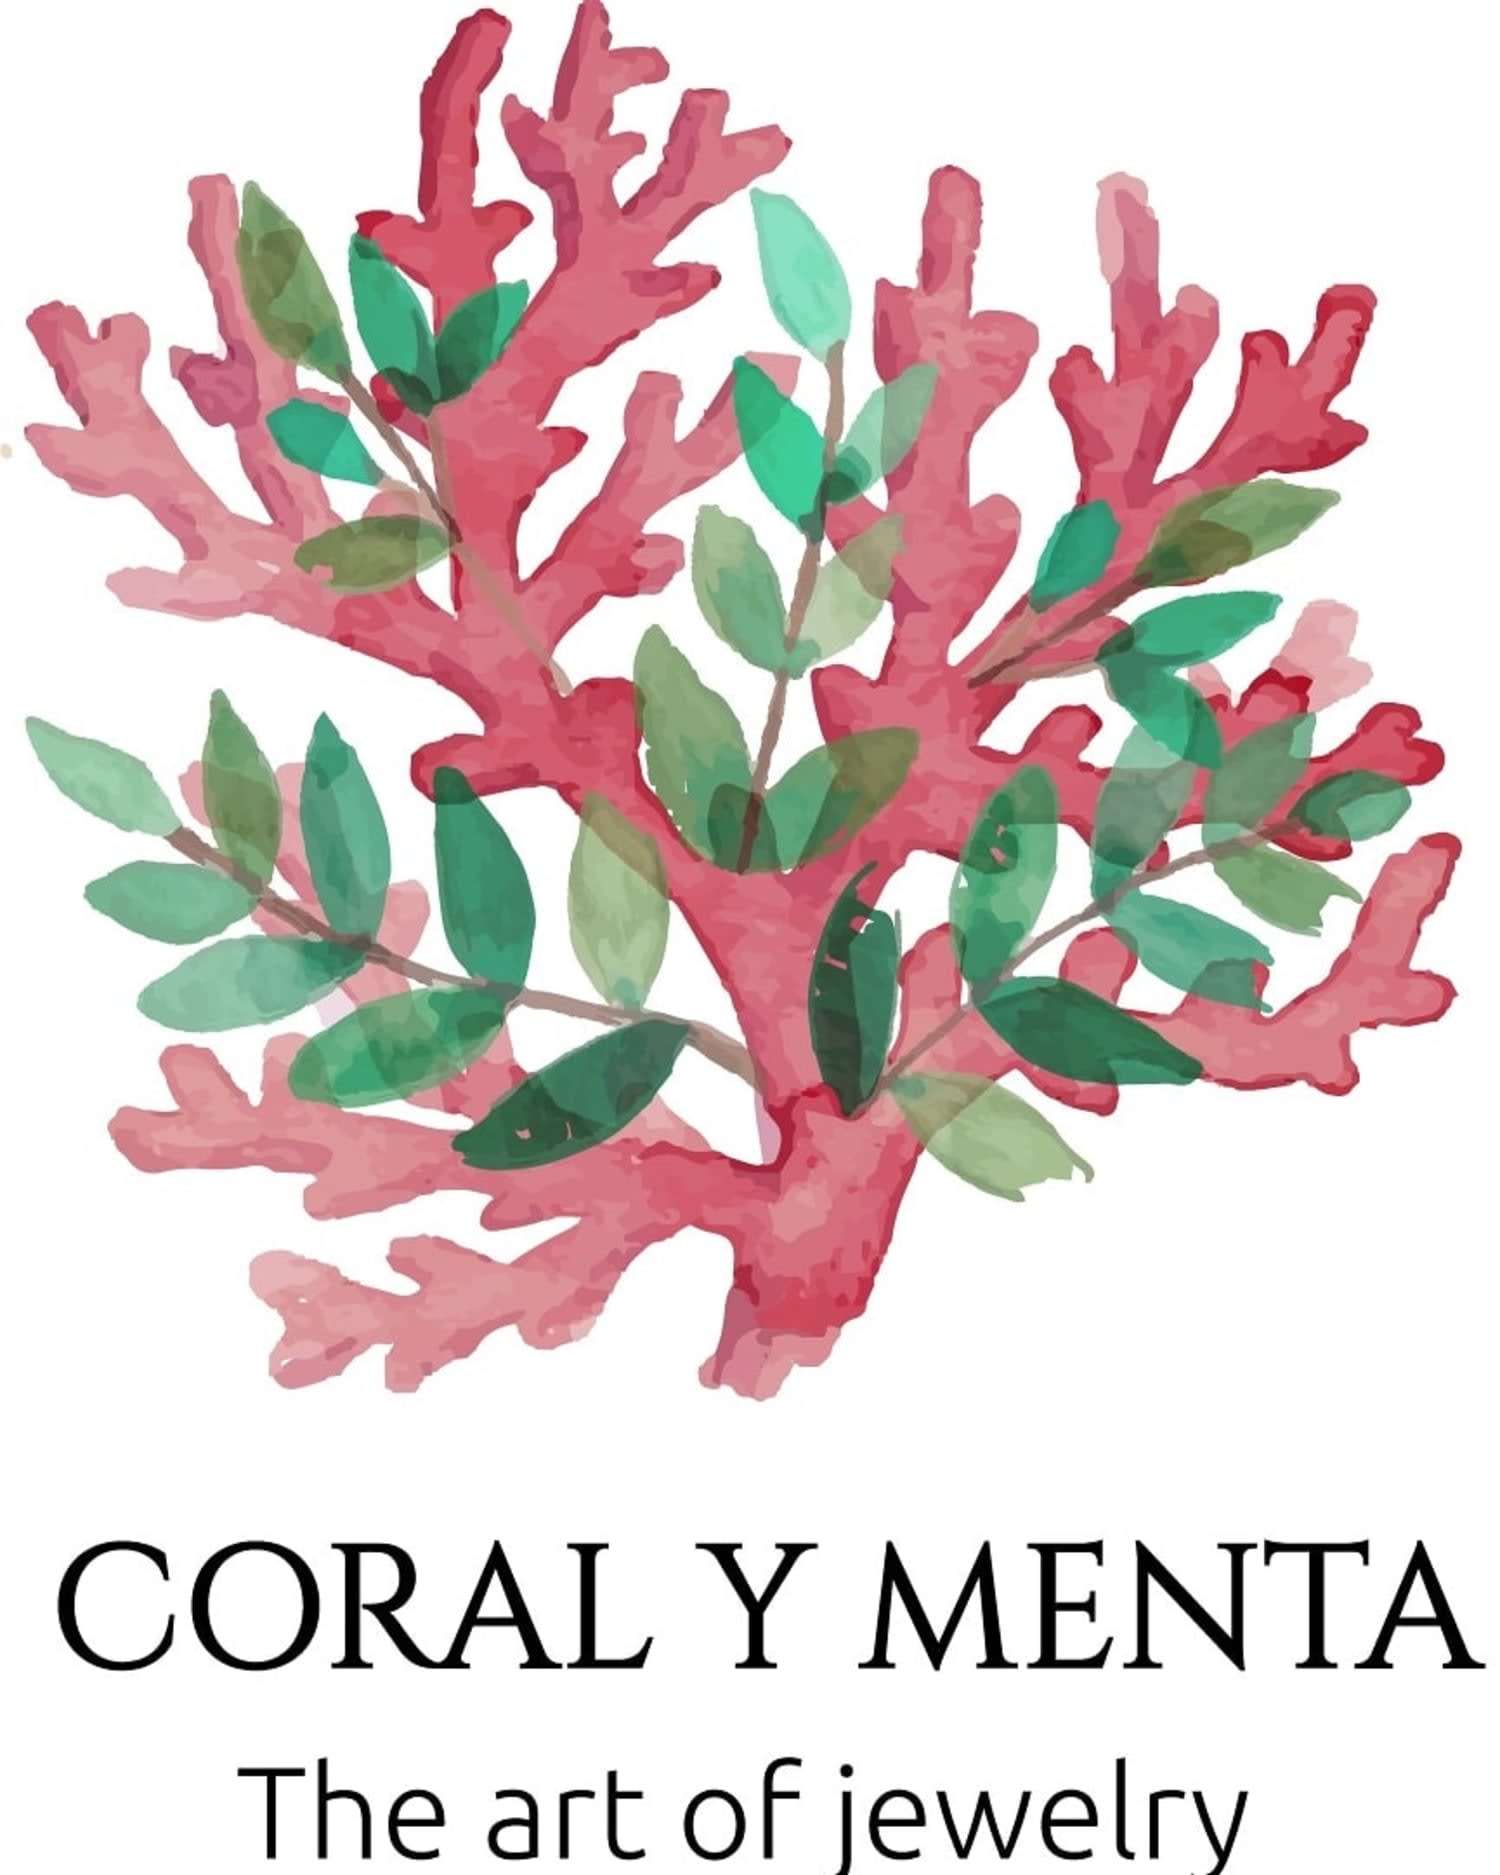 Coral y menta